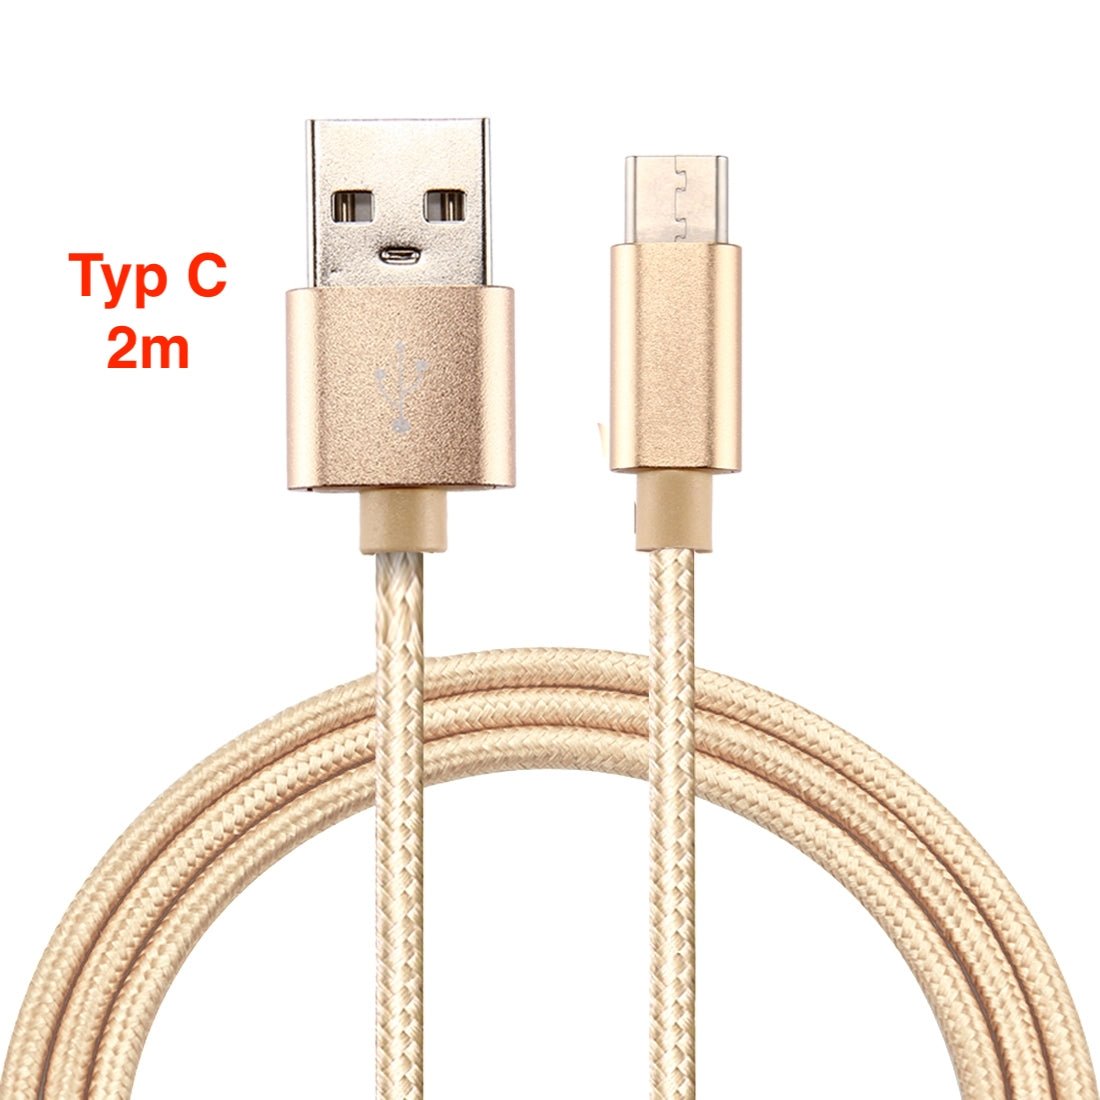 Typ C USB Schnell Ladekabel Gold 2m - Calitronshop.com